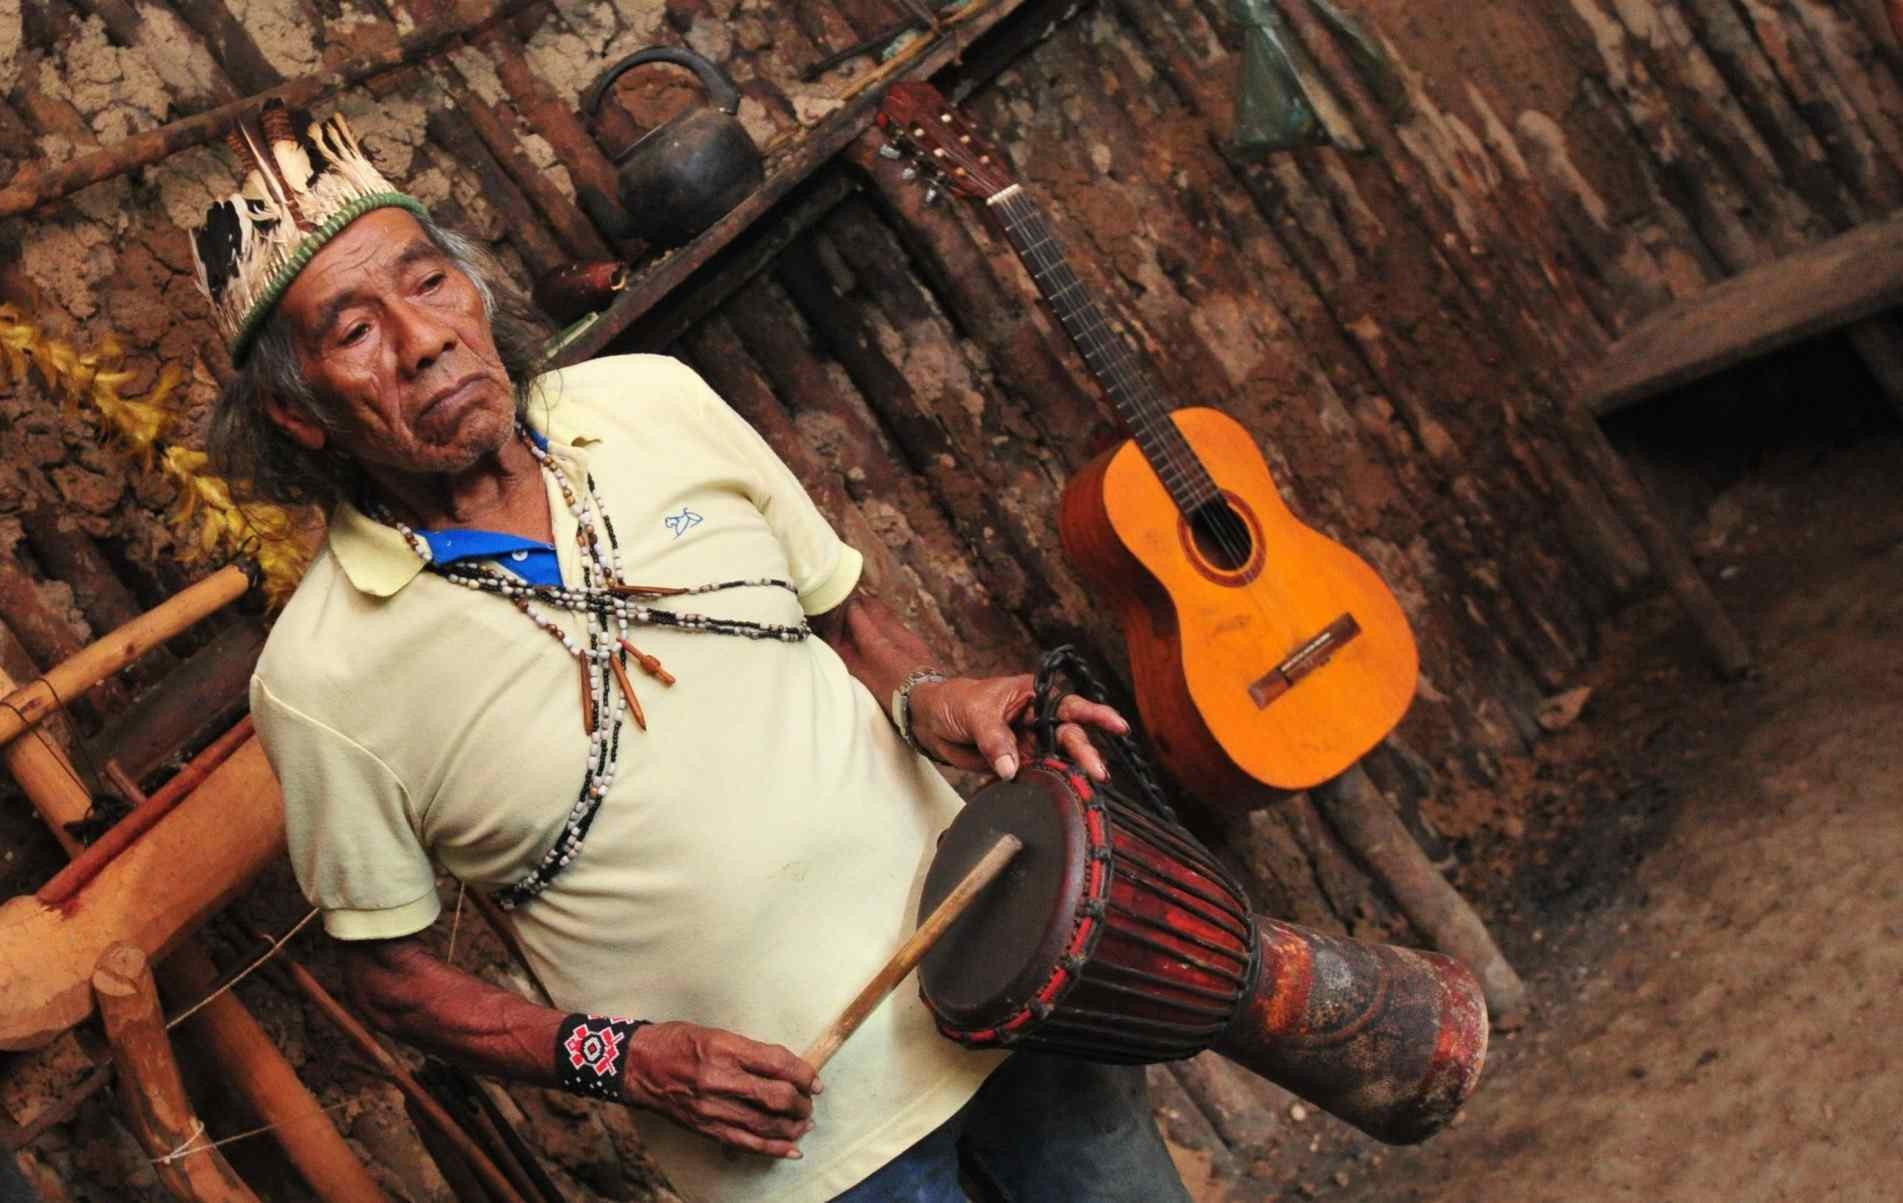 Na tribo, todos respeitam e obedecem o cacique, que ensina as tradições do povo guarani para as crianças.